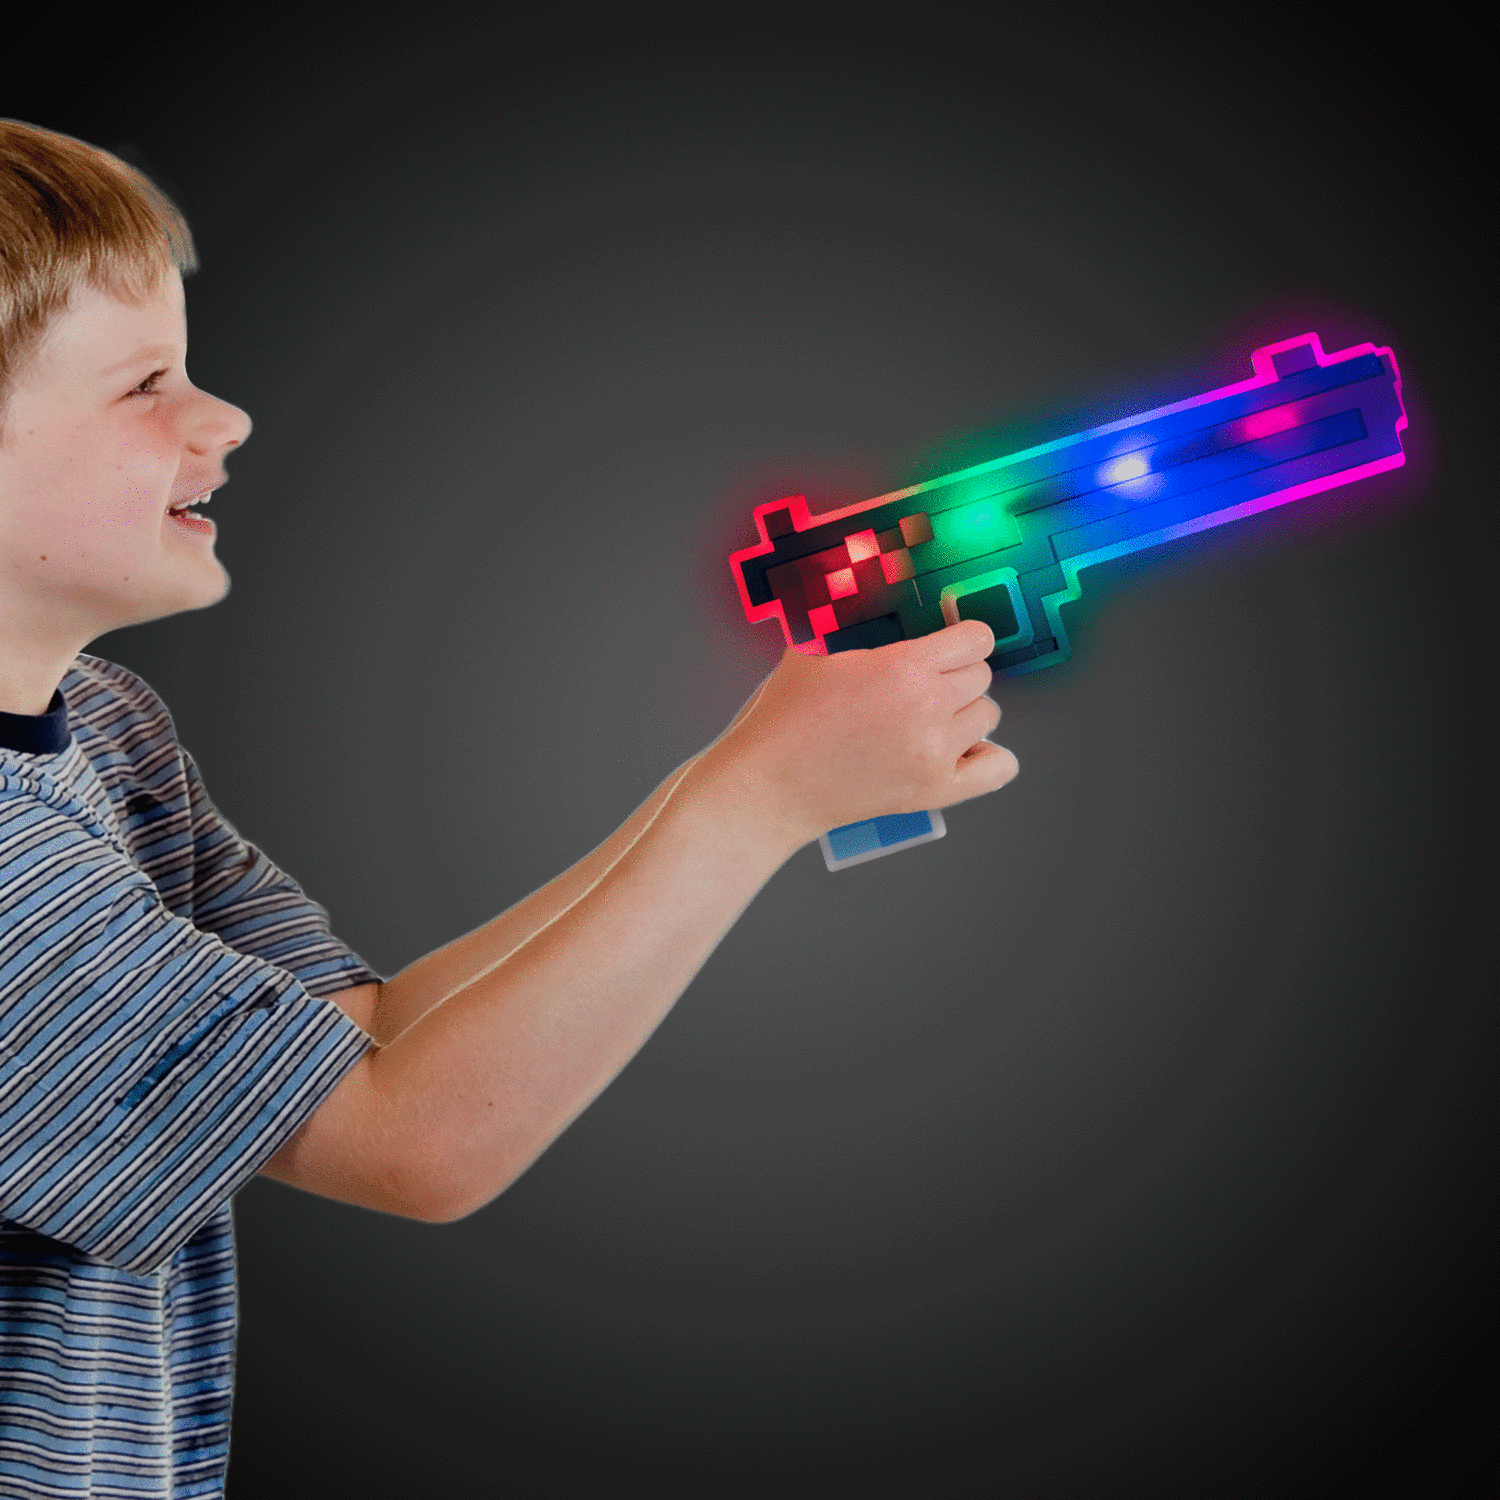 אקדח פיקסלים עם אורות וצלילים